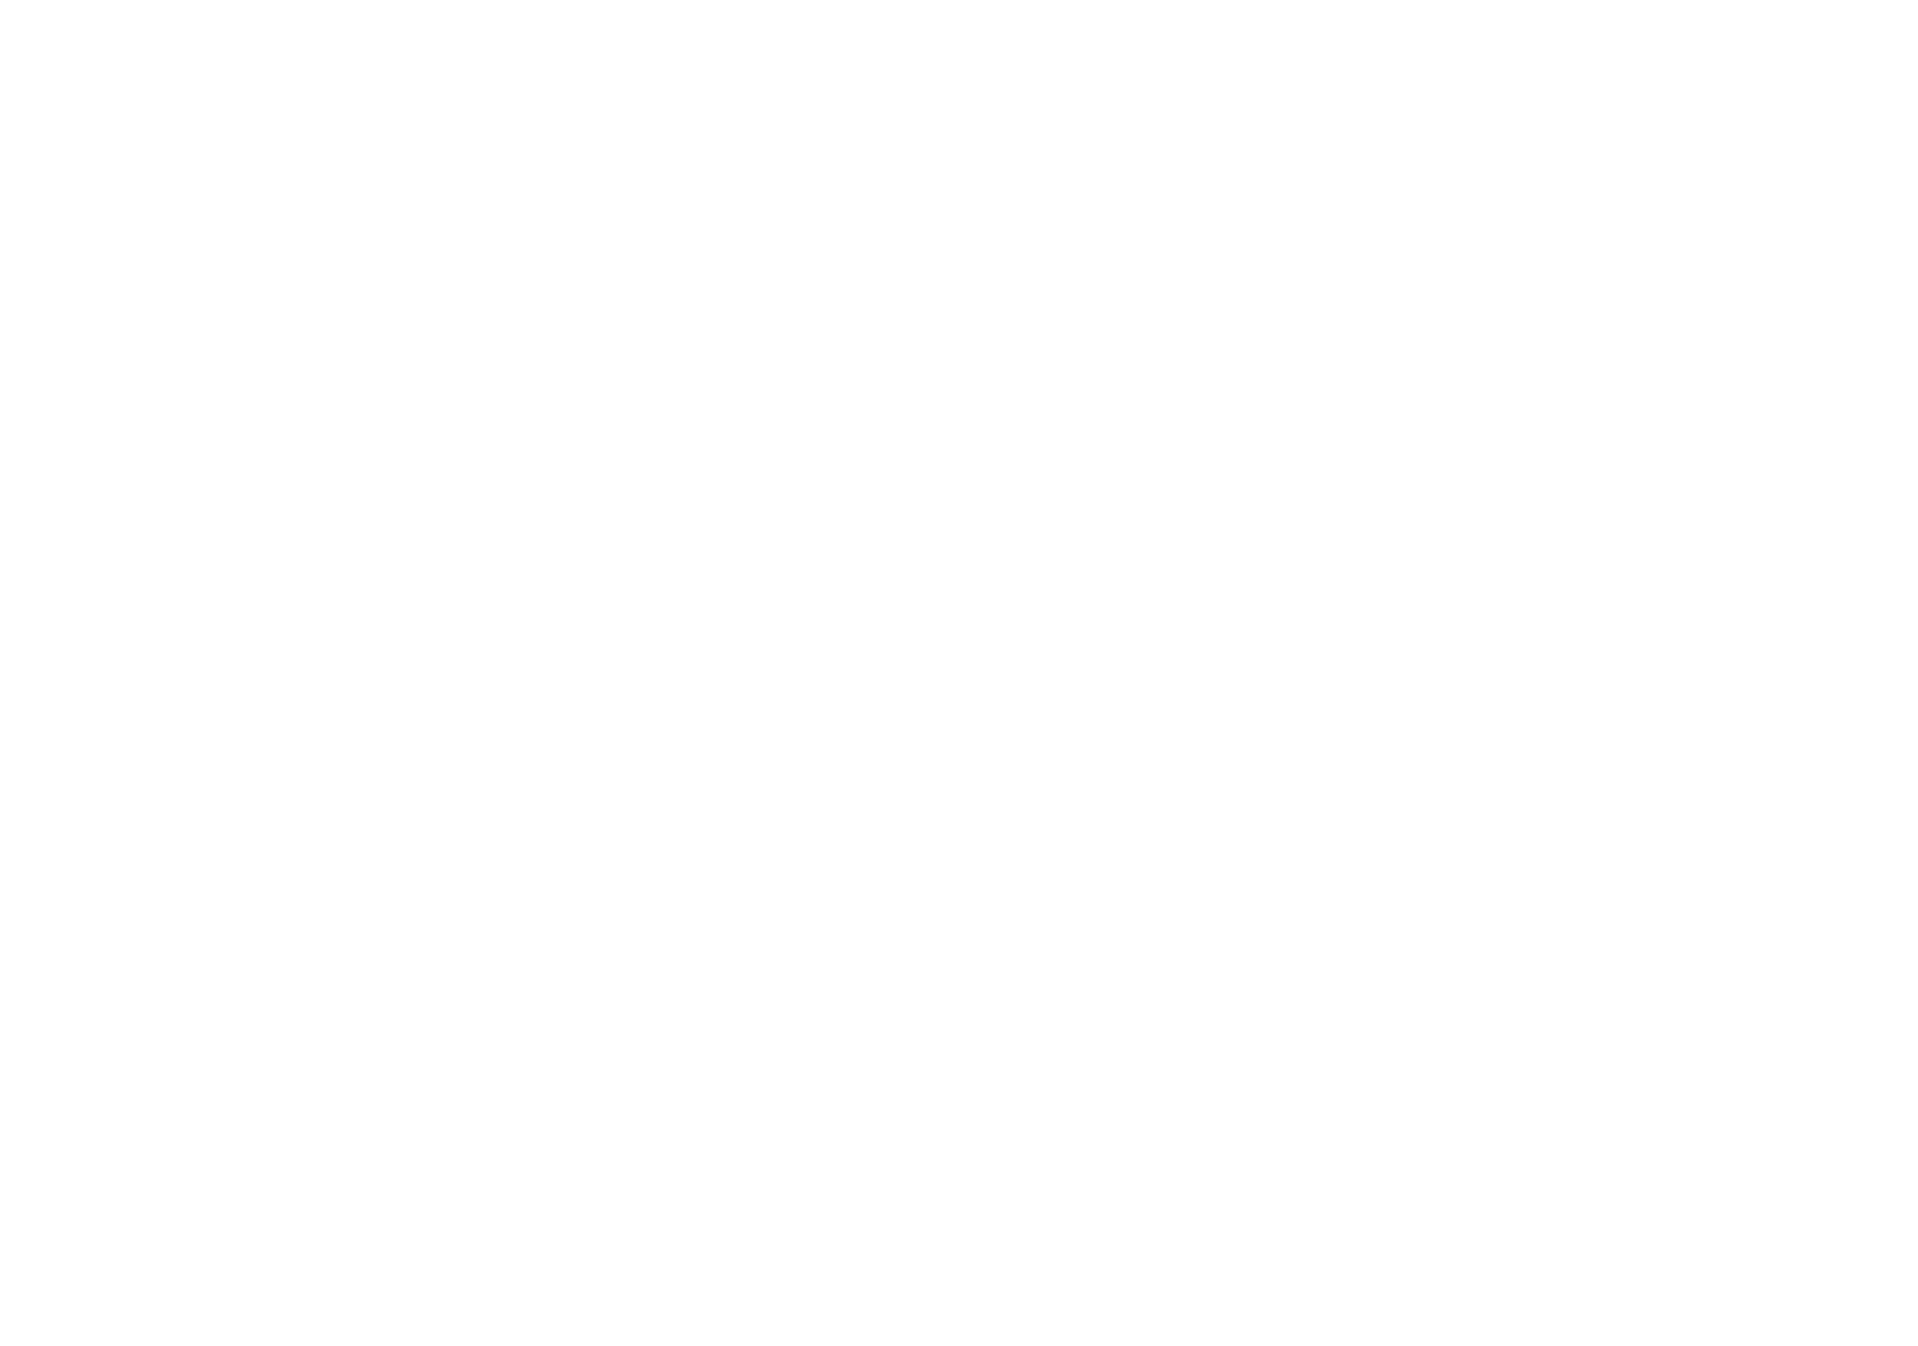 Lenses | Atlas For Media Services